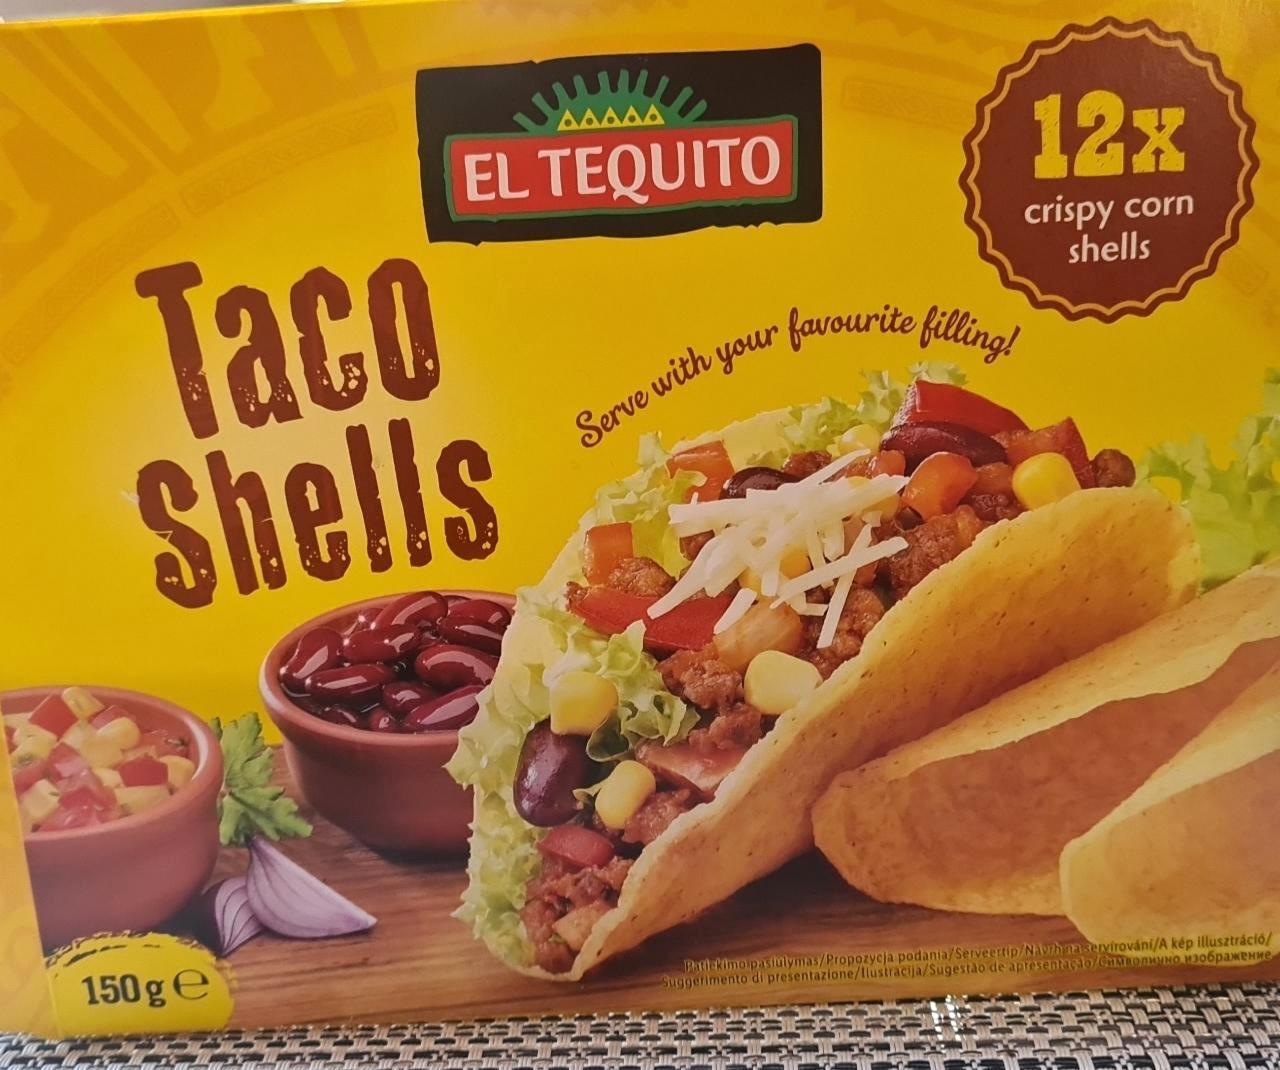 Taco tápértékek kalória, Schells kJ és Tequito El -